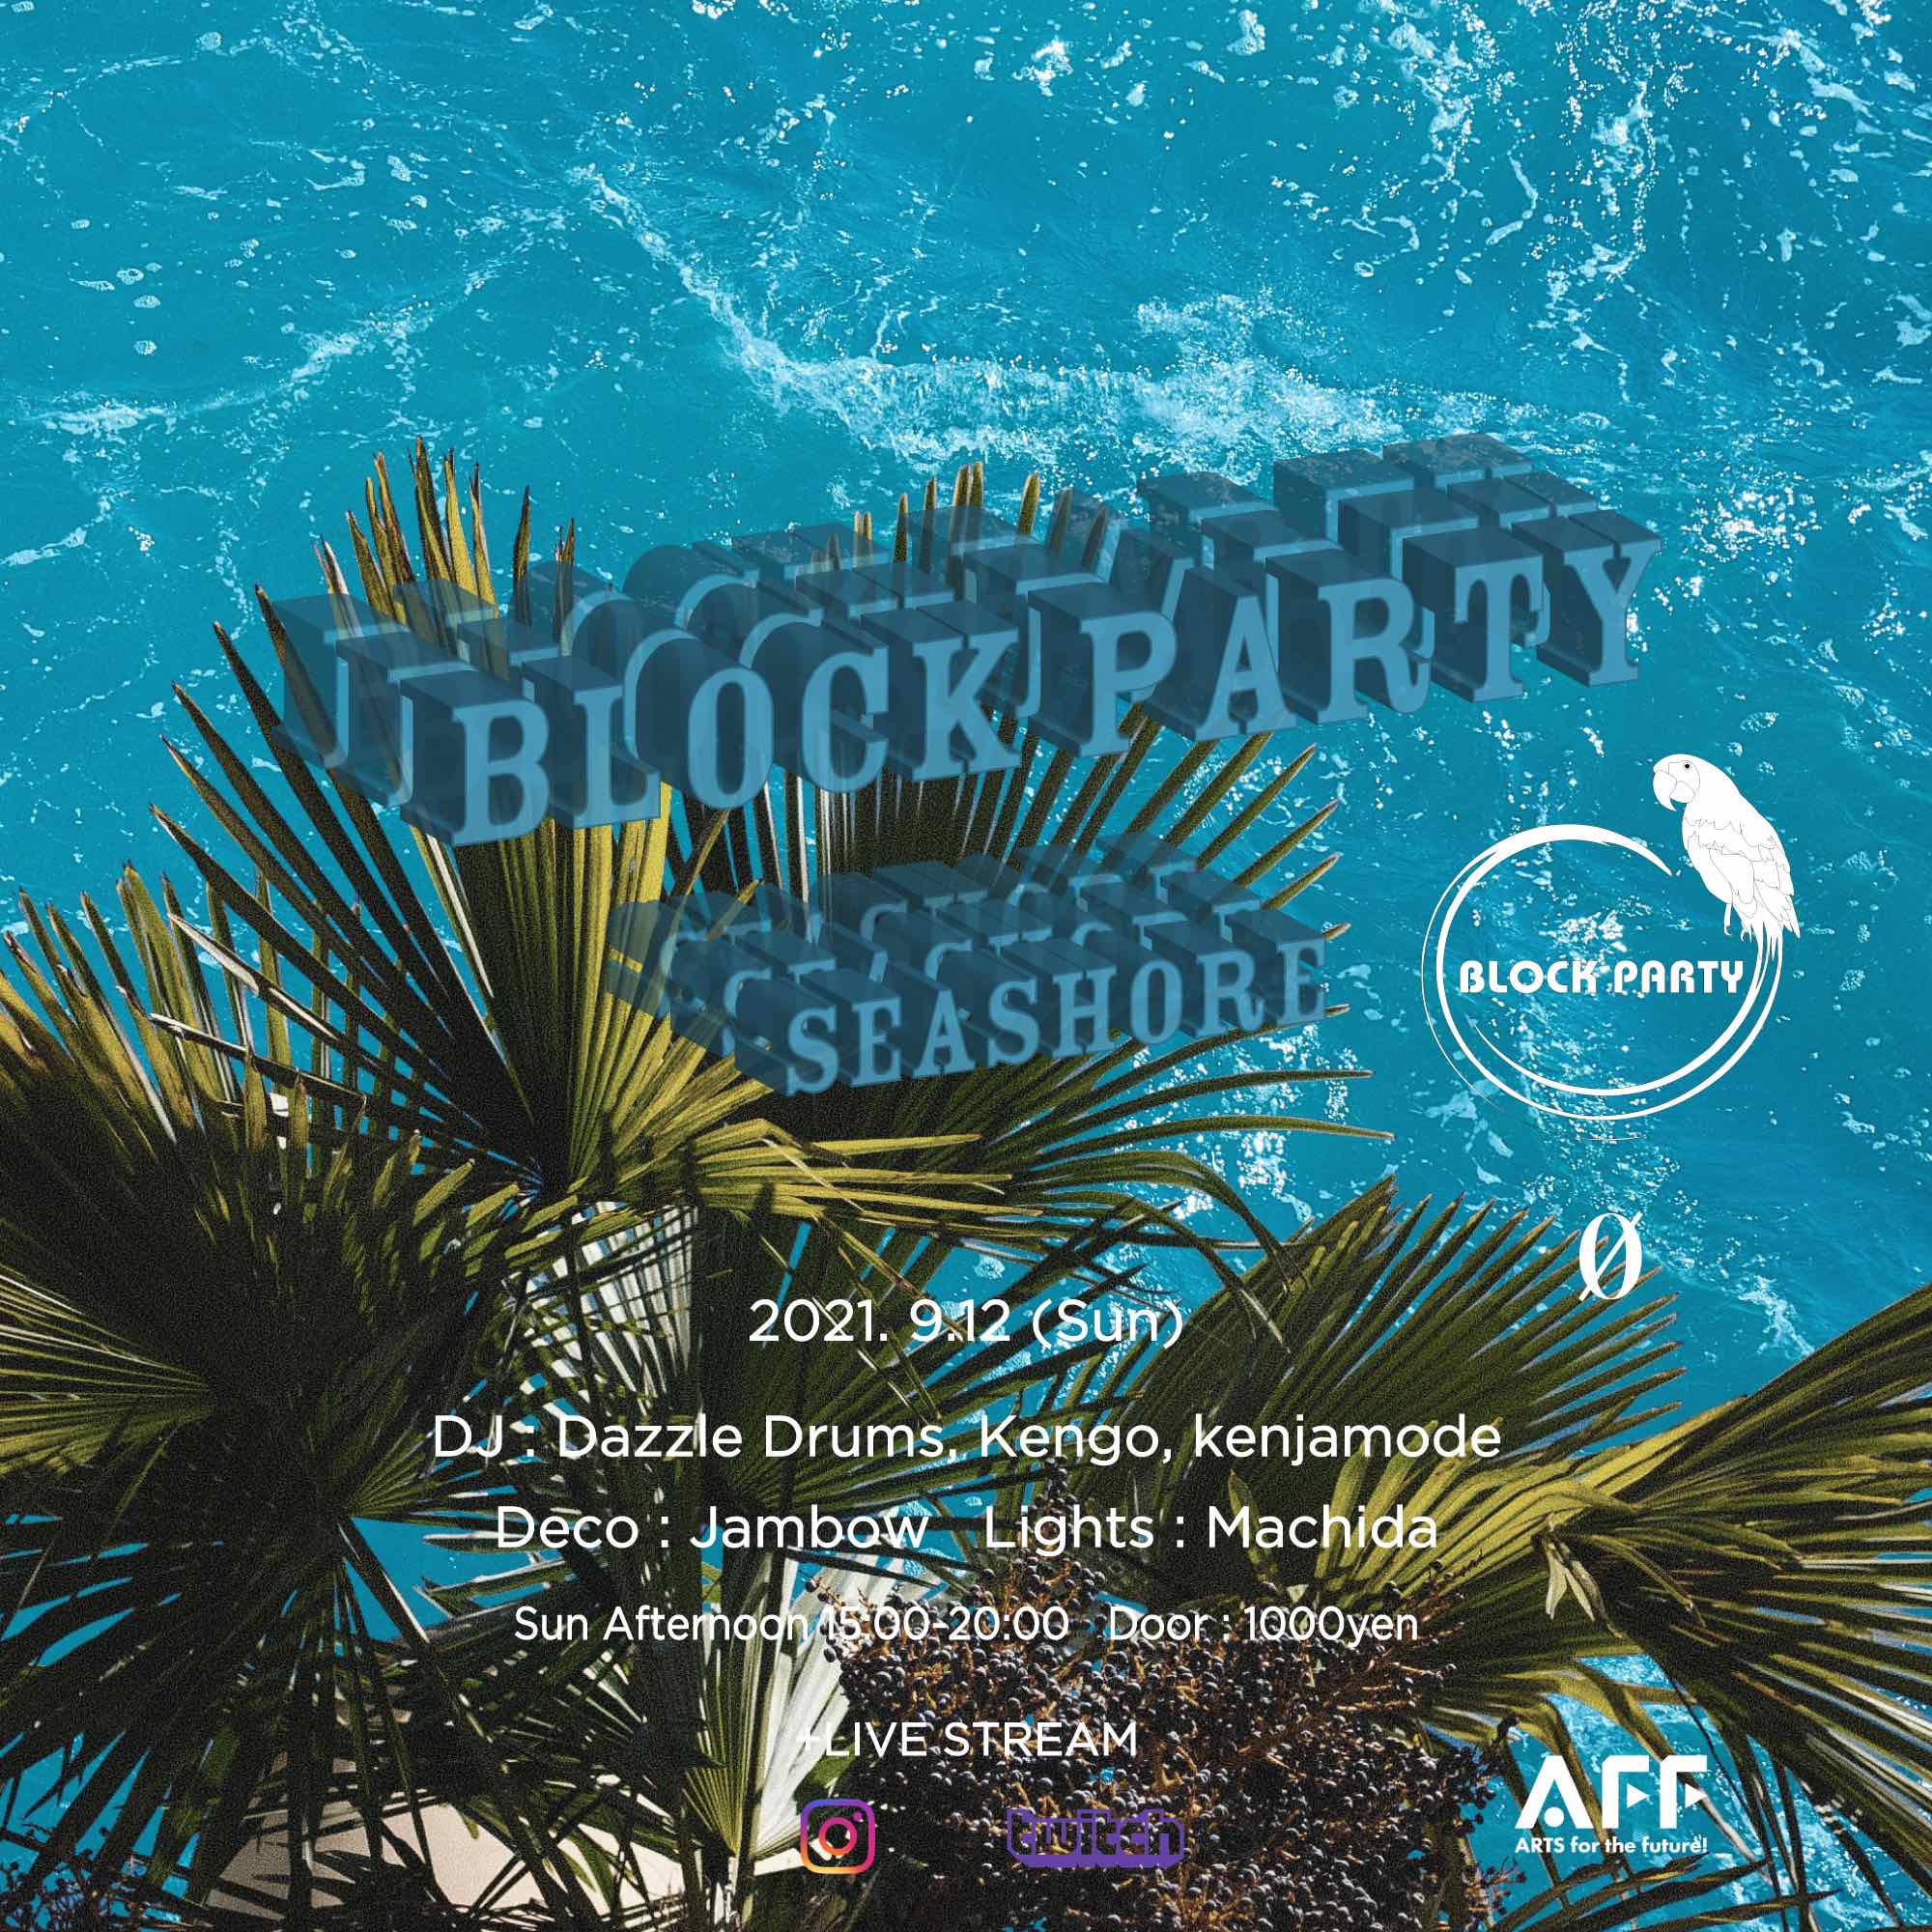 9.12.21 (Sun 15:00-20:00) Block Party “Seashore” + Live Stream @ 0 Zero